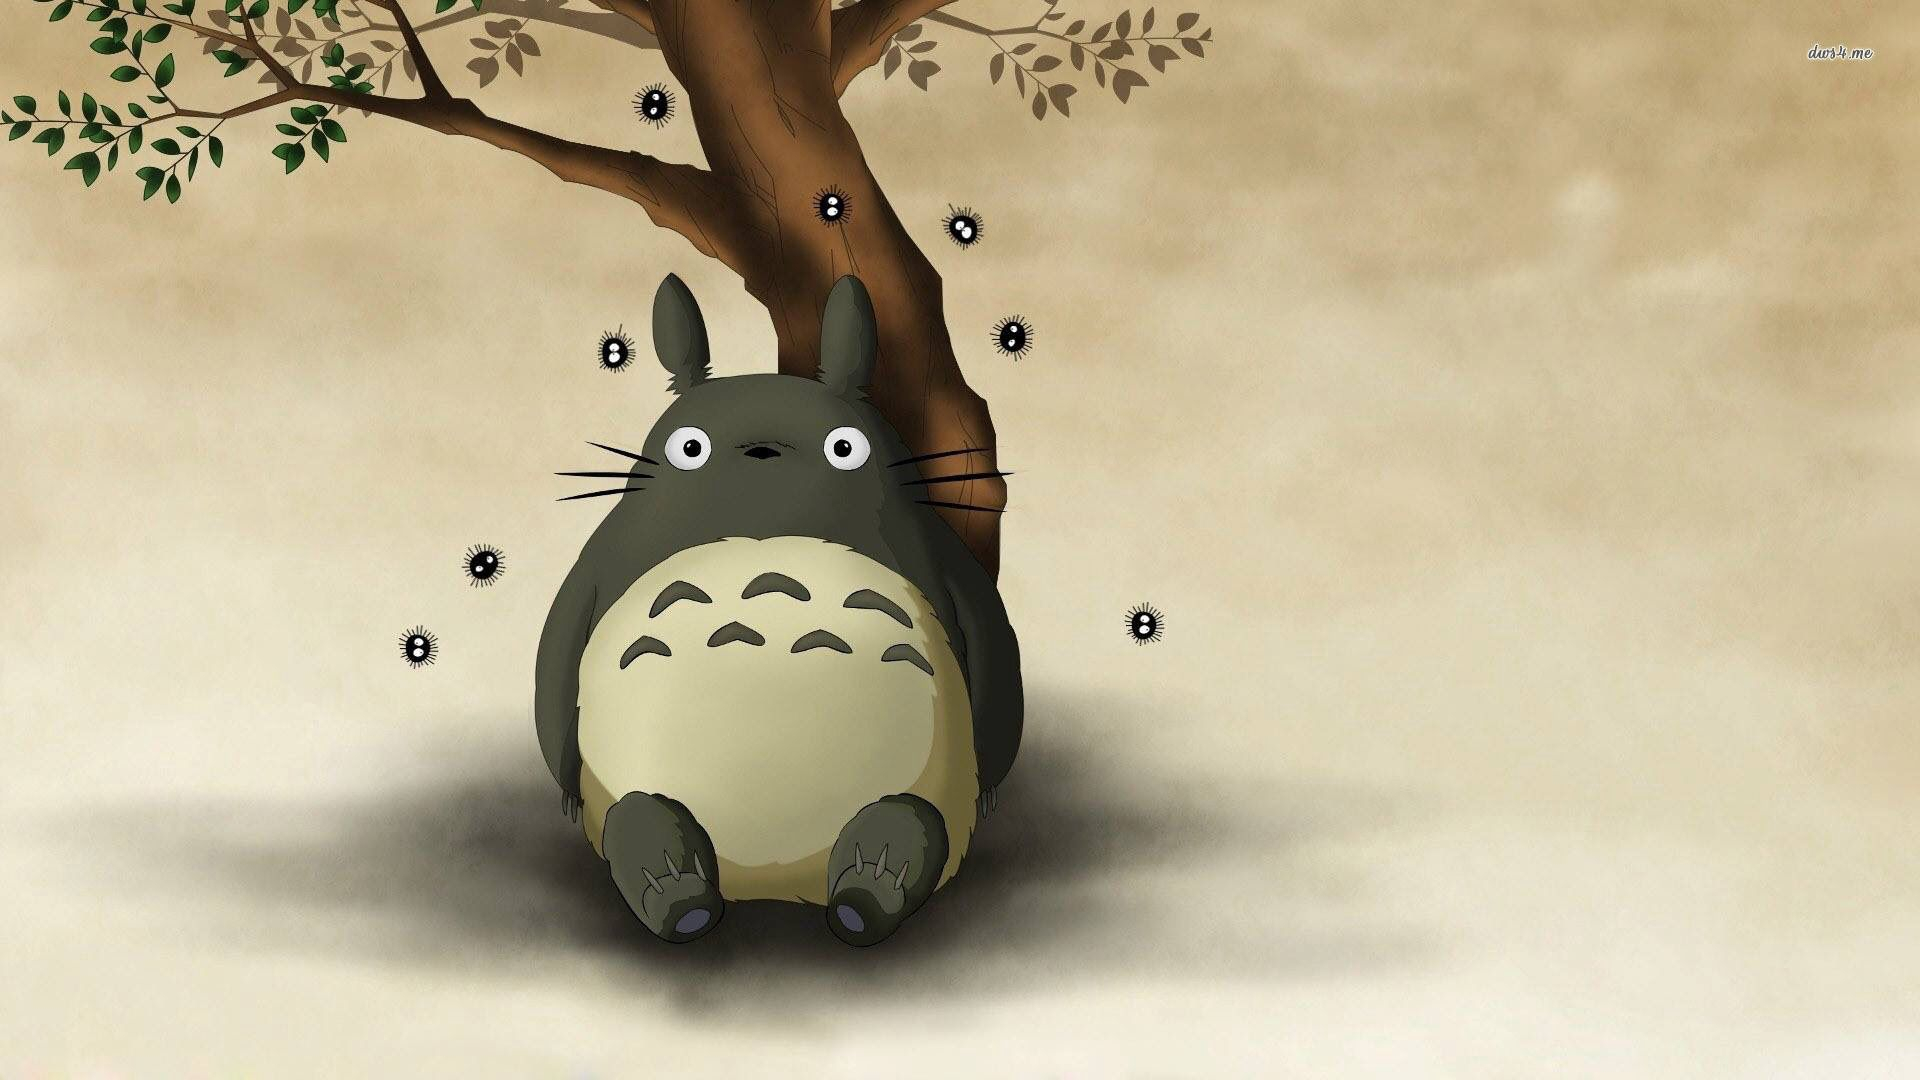 1920x1080 Totoro wallpaper | My neighbor totoro, Totoro, Tree wallpaper iphone